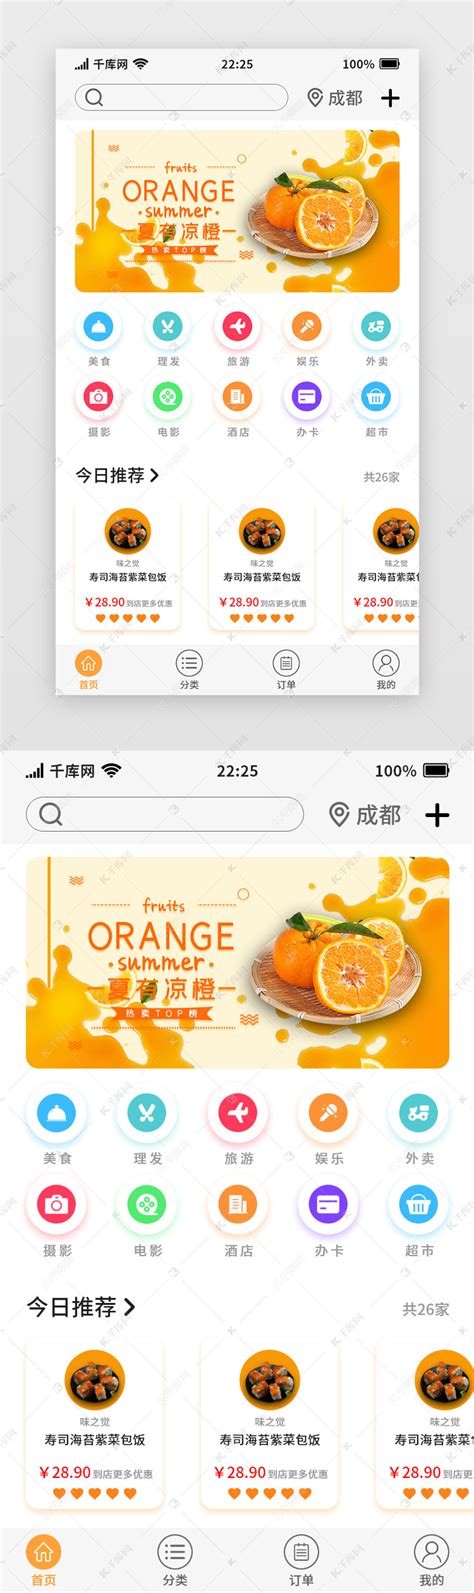 橙色简约通用网购电商APP首页ui界面设计素材-千库网